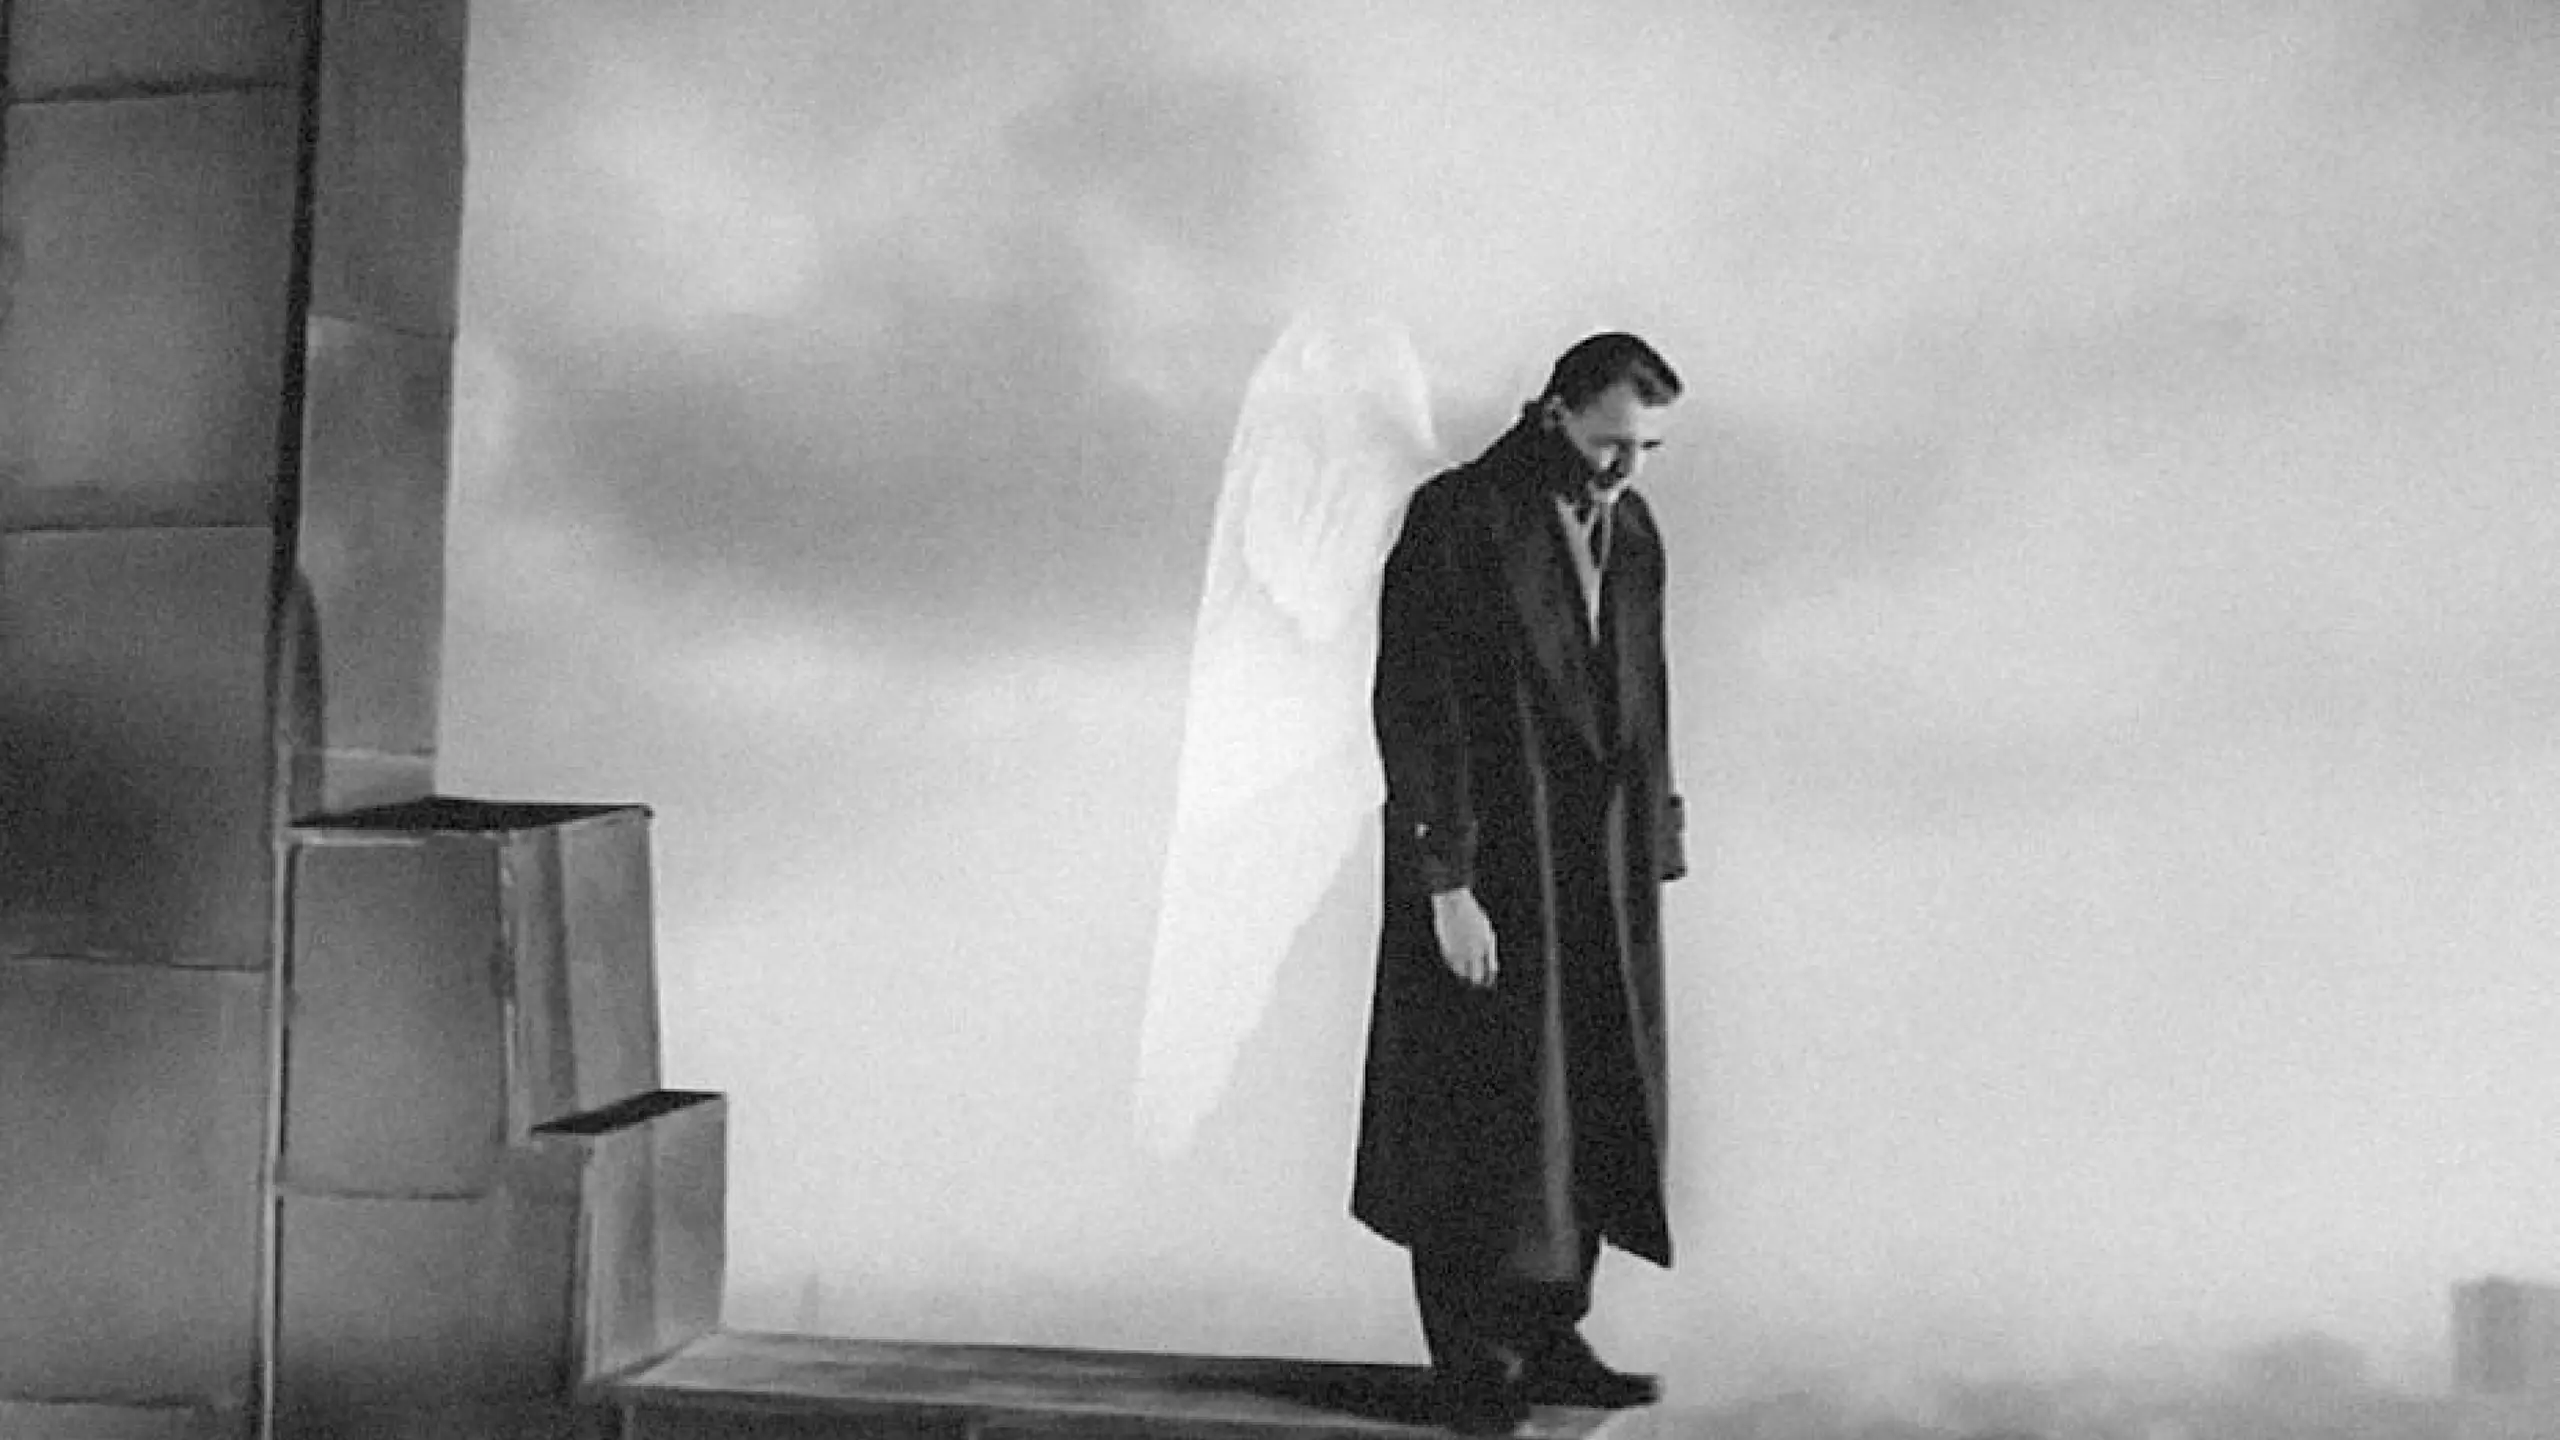 Bruno Ganz spielt in Der Himmel über Berlin den Engel Damiel. Wim Wenders verfilmte den gleichnamigen Roman von Peter Handke